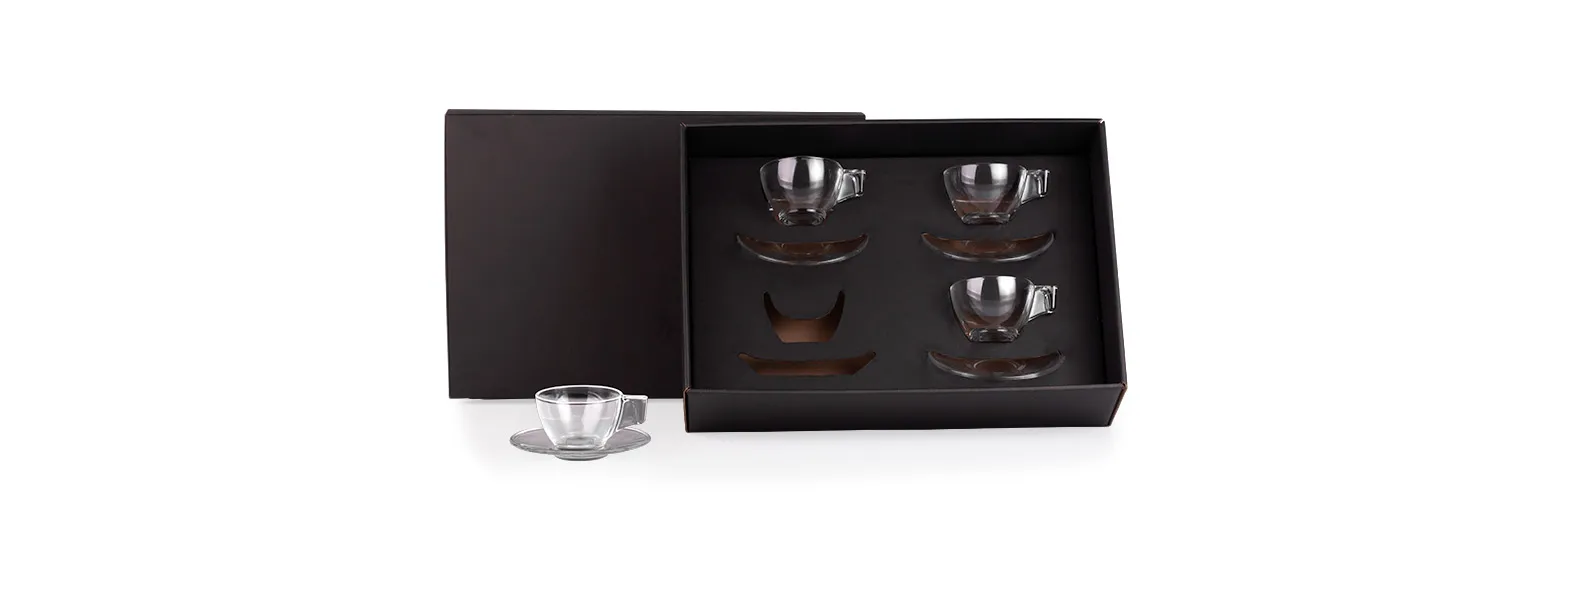 Jogo de xícaras. Kit para café contendo quatro xícaras com pires em vidro. Capacidade: 90 ml cada xícara.